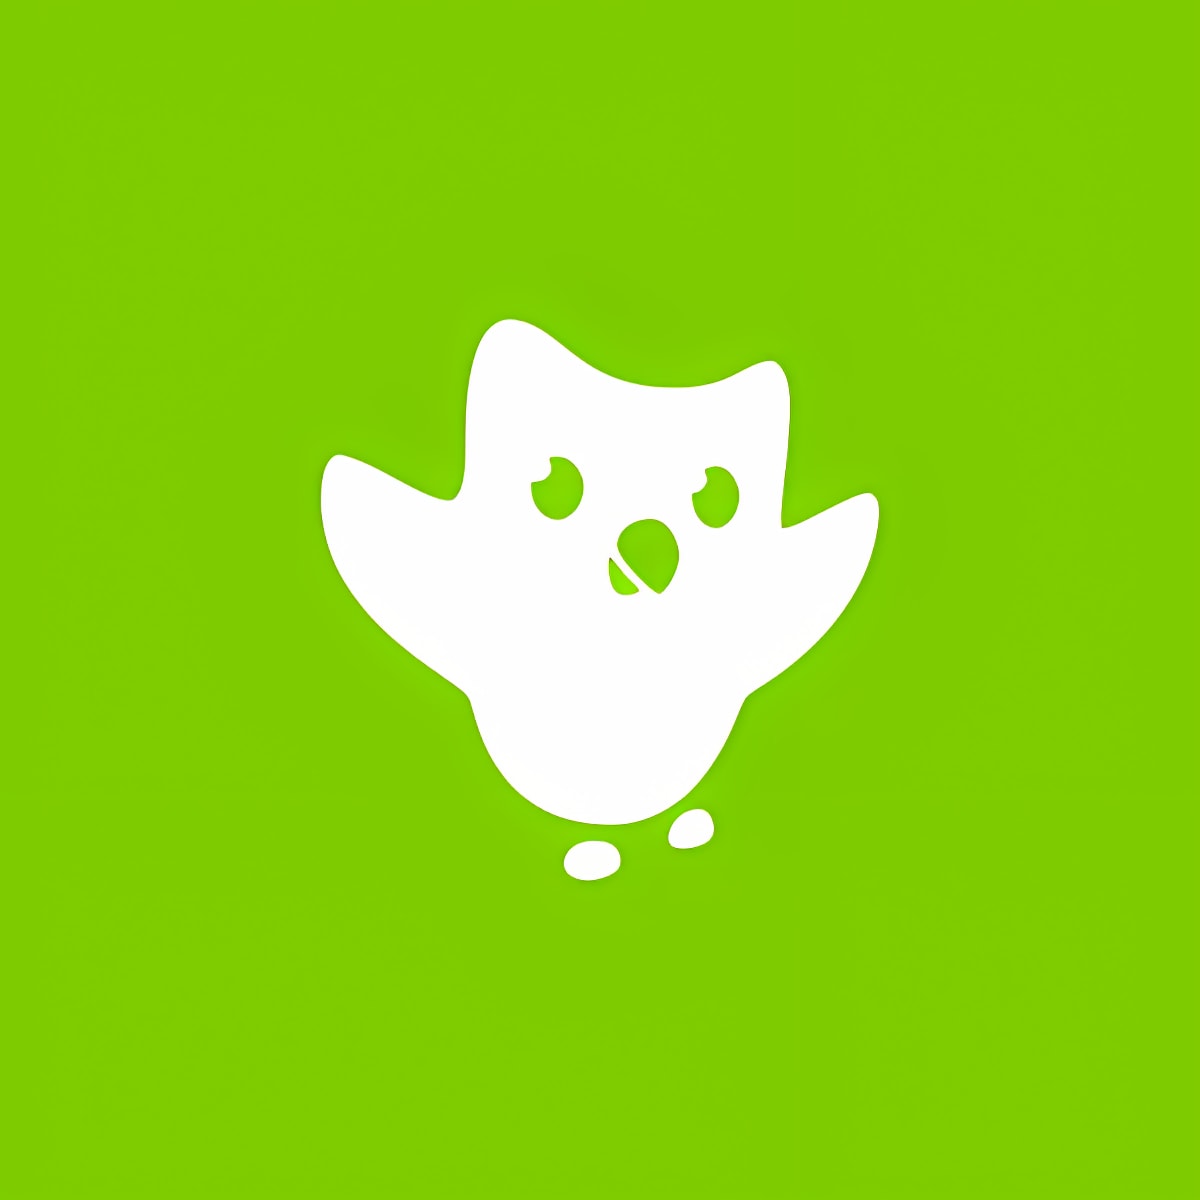 下载 Duolingo - Learn Languages for Free 安装 最新 App 下载程序